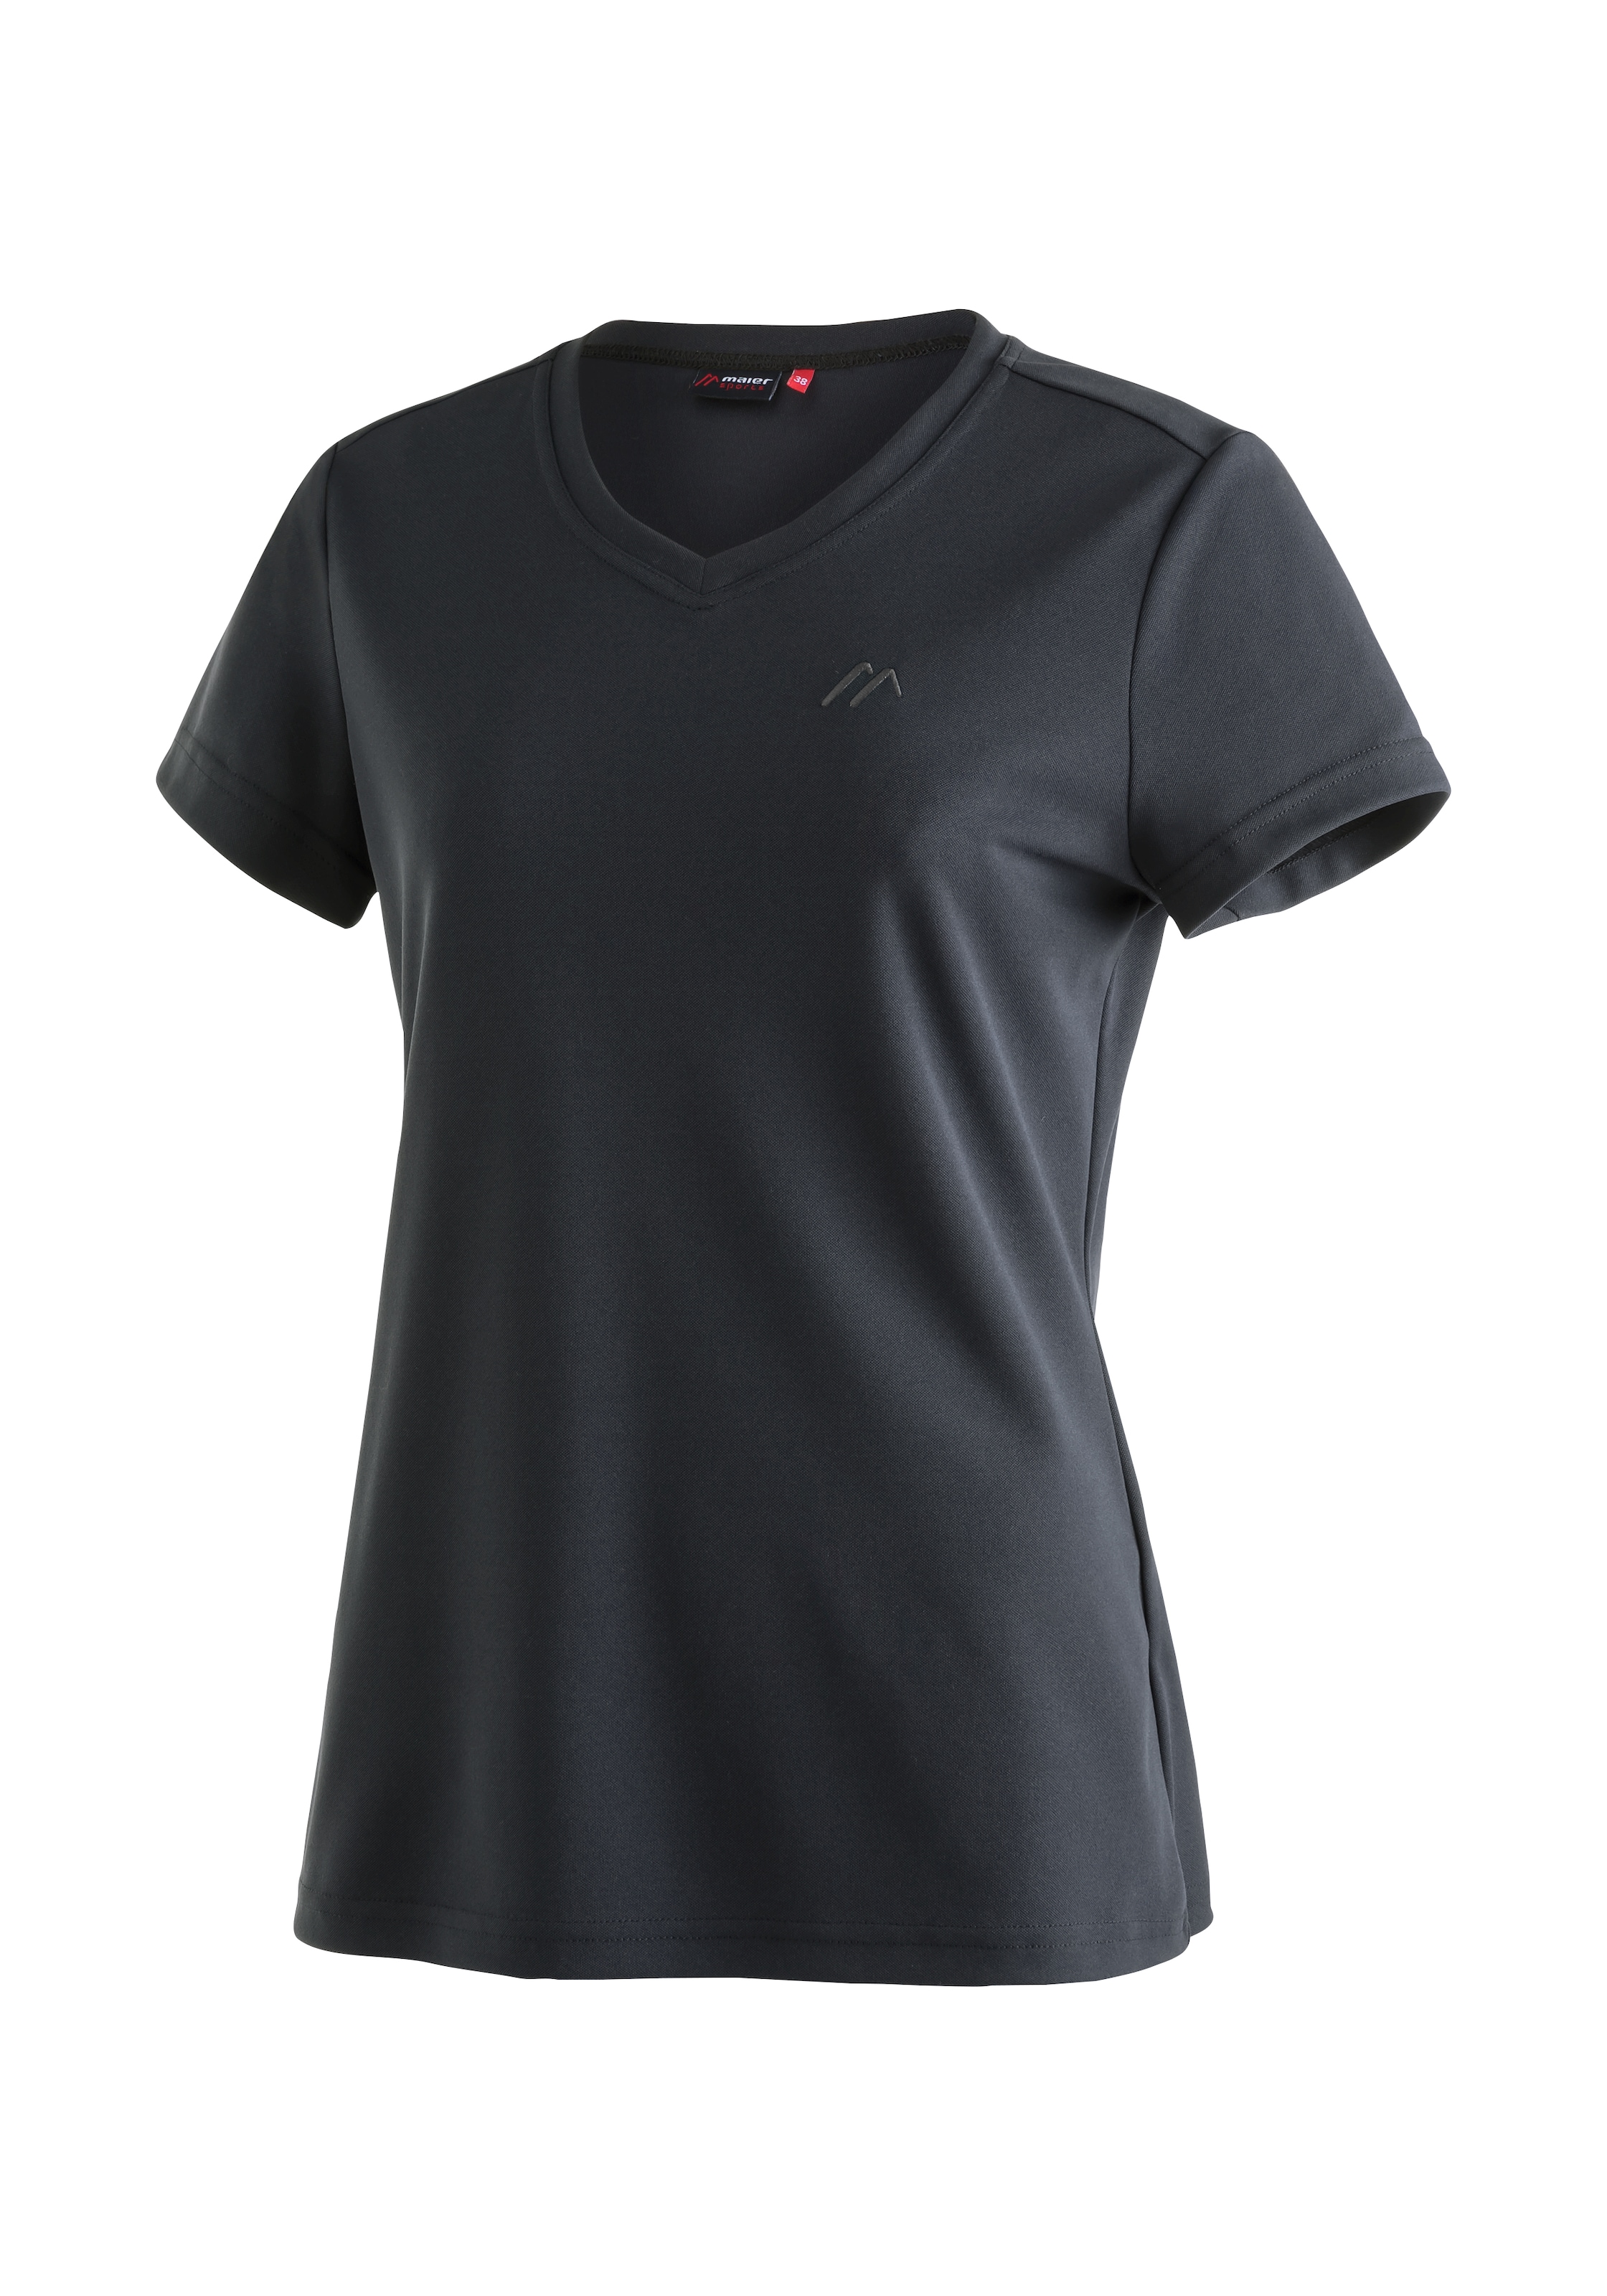 Damen und Wandern Maier | bei OTTO bestellen OTTO Sports »Trudy«, Funktionsshirt T-Shirt, für Kurzarmshirt Freizeit